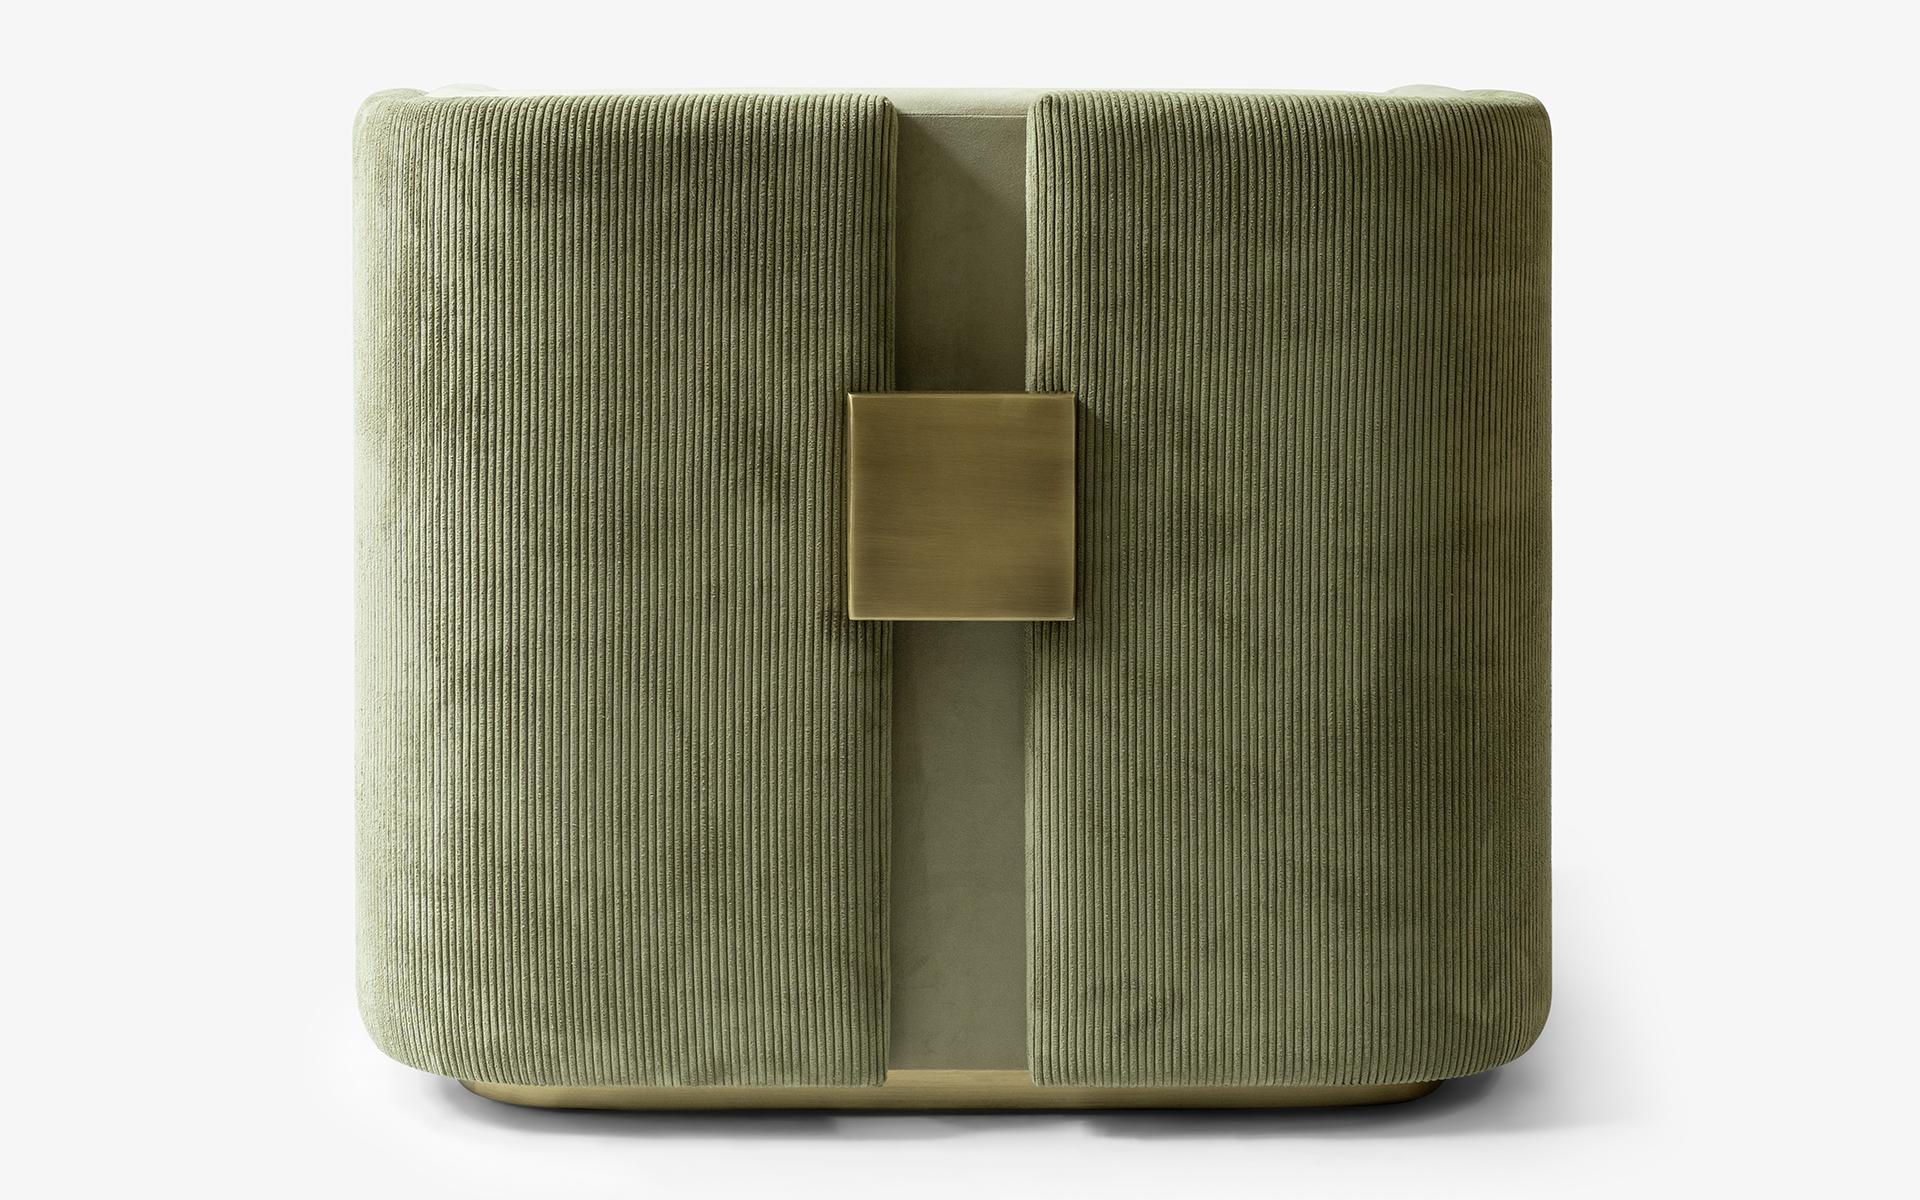 Die gepolsterten Sessel der Serie PAPILLONNE zeichnen sich durch ein modernes Design und eine Vielzahl von MATERIALEN aus, die jeden Raum aufwerten können. Das minimalistische Erscheinungsbild der Stoffserie kann jedem Raum ein elegantes und